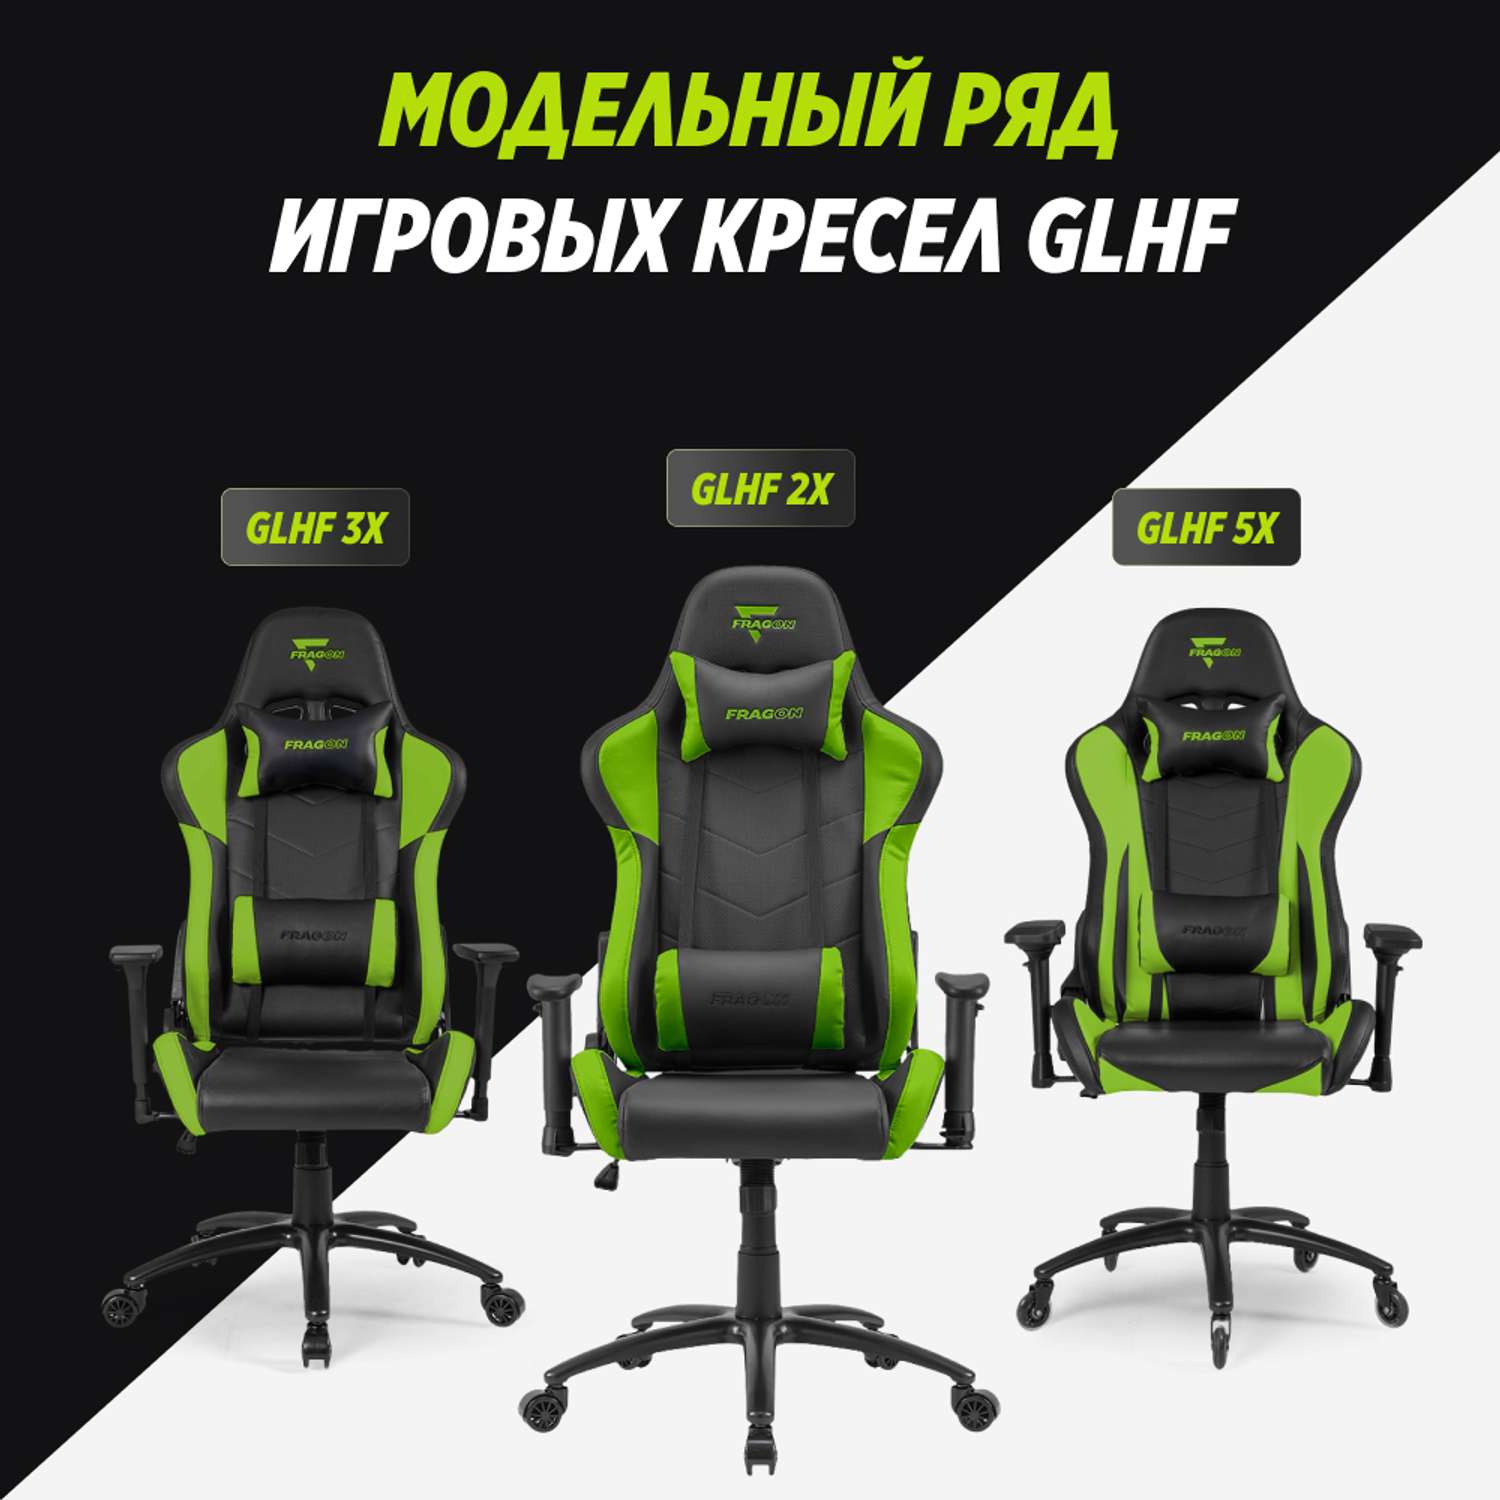 Компьютерное кресло GLHF серия 2X Black/Green - фото 10